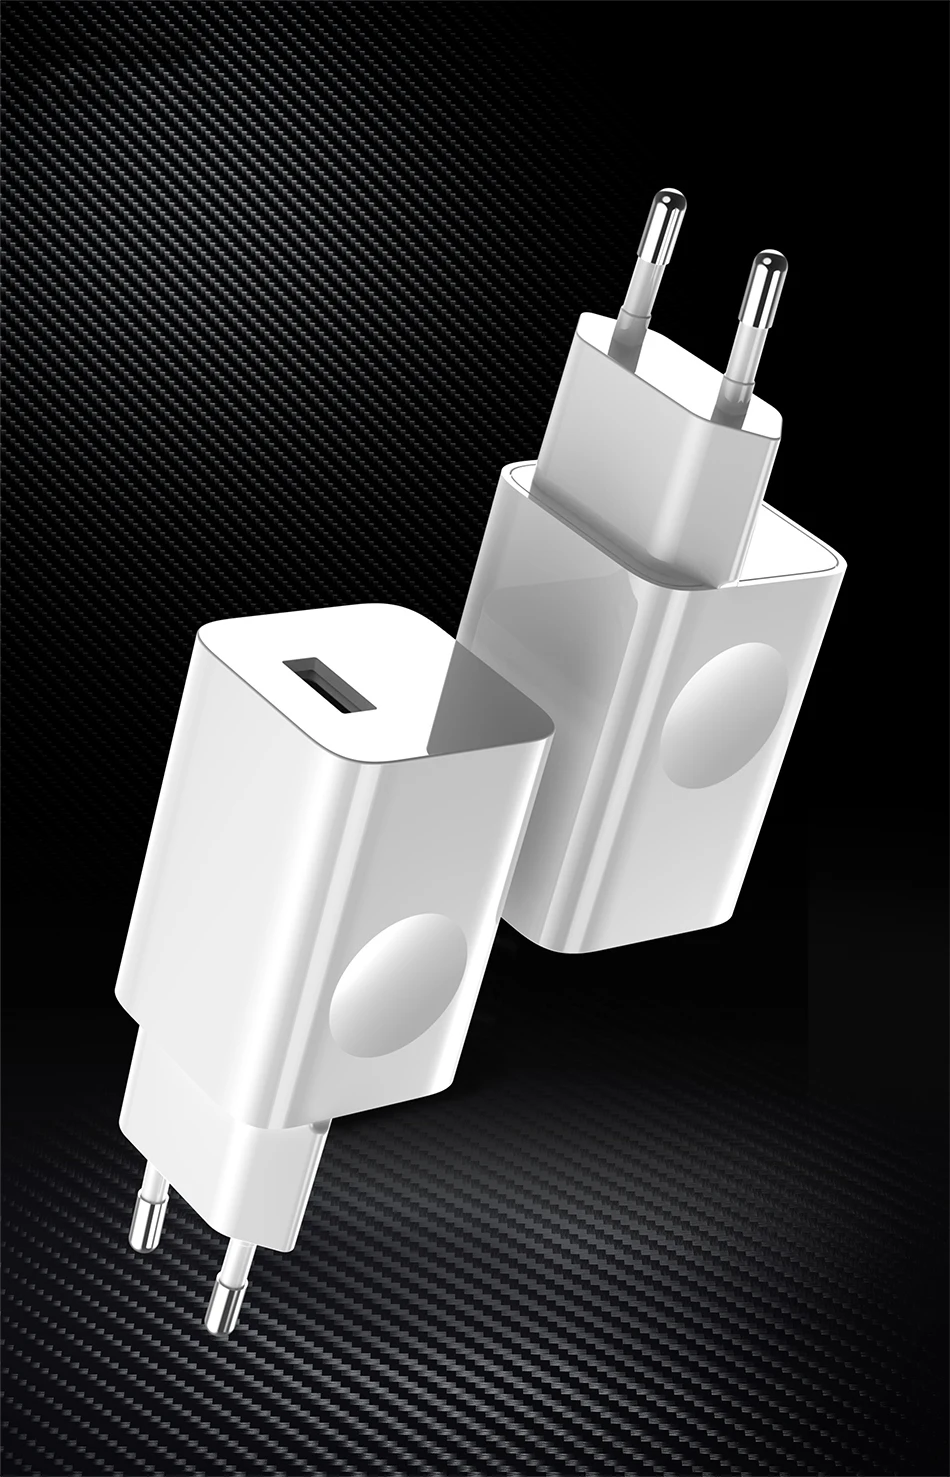 ITUF один провод быстрое зарядное устройство 5V2. 0A зарядное устройство для мобильного телефона UE USB зарядное устройство для samsung Xiaomi iPhone huawei зарядное устройство для мобильного телефона